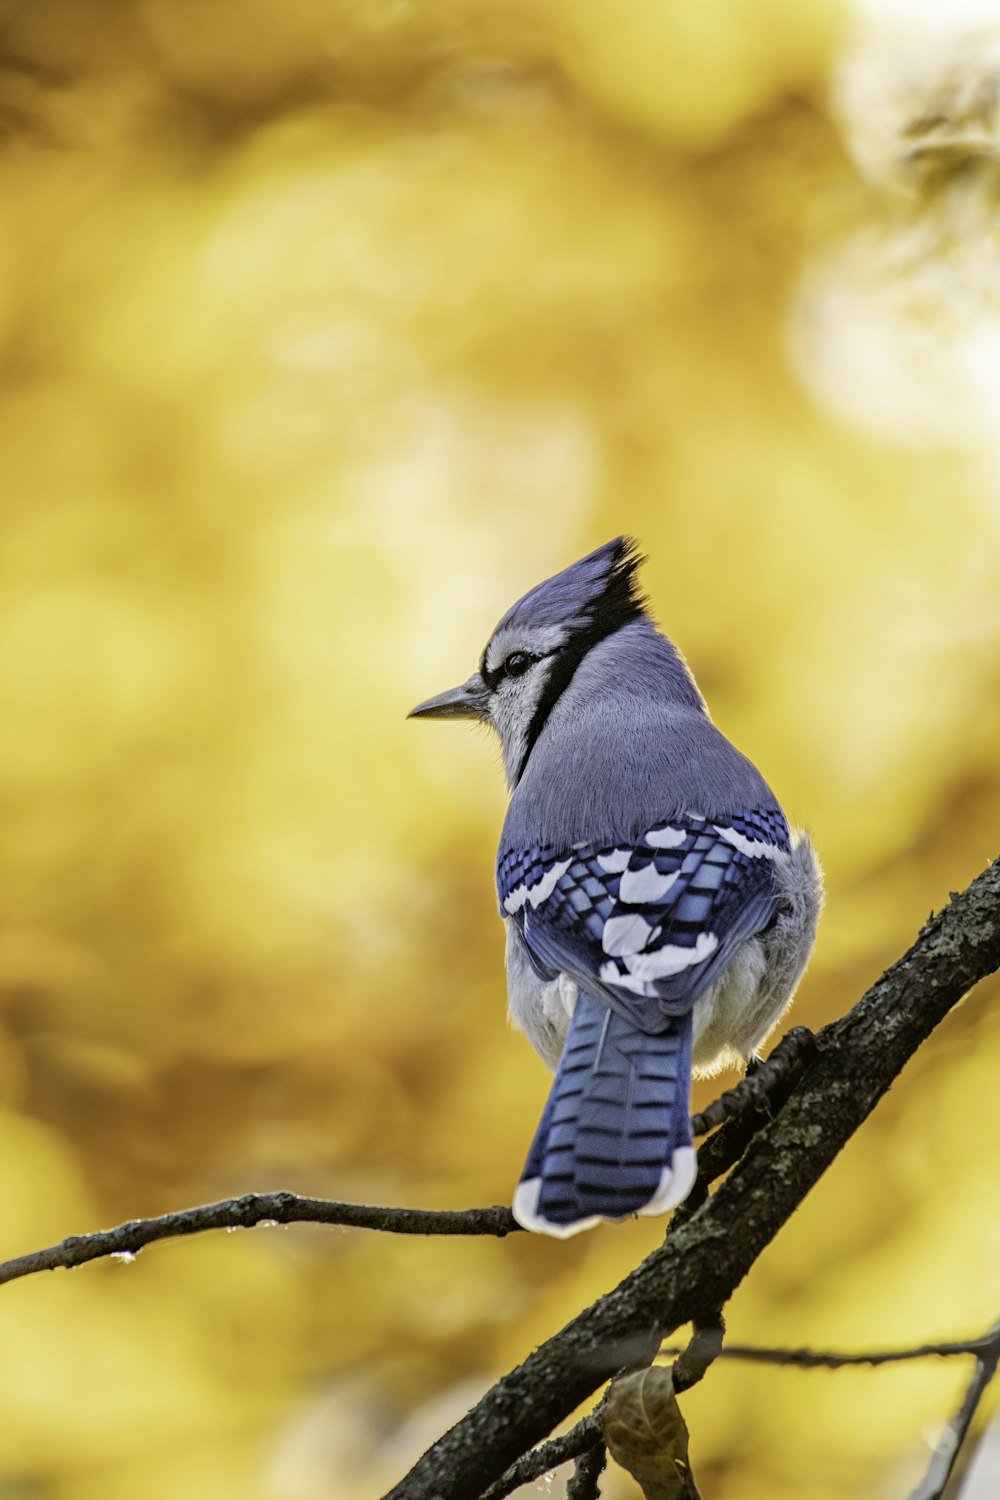 Más de 20 imágenes de pájaros gratis en Unsplash